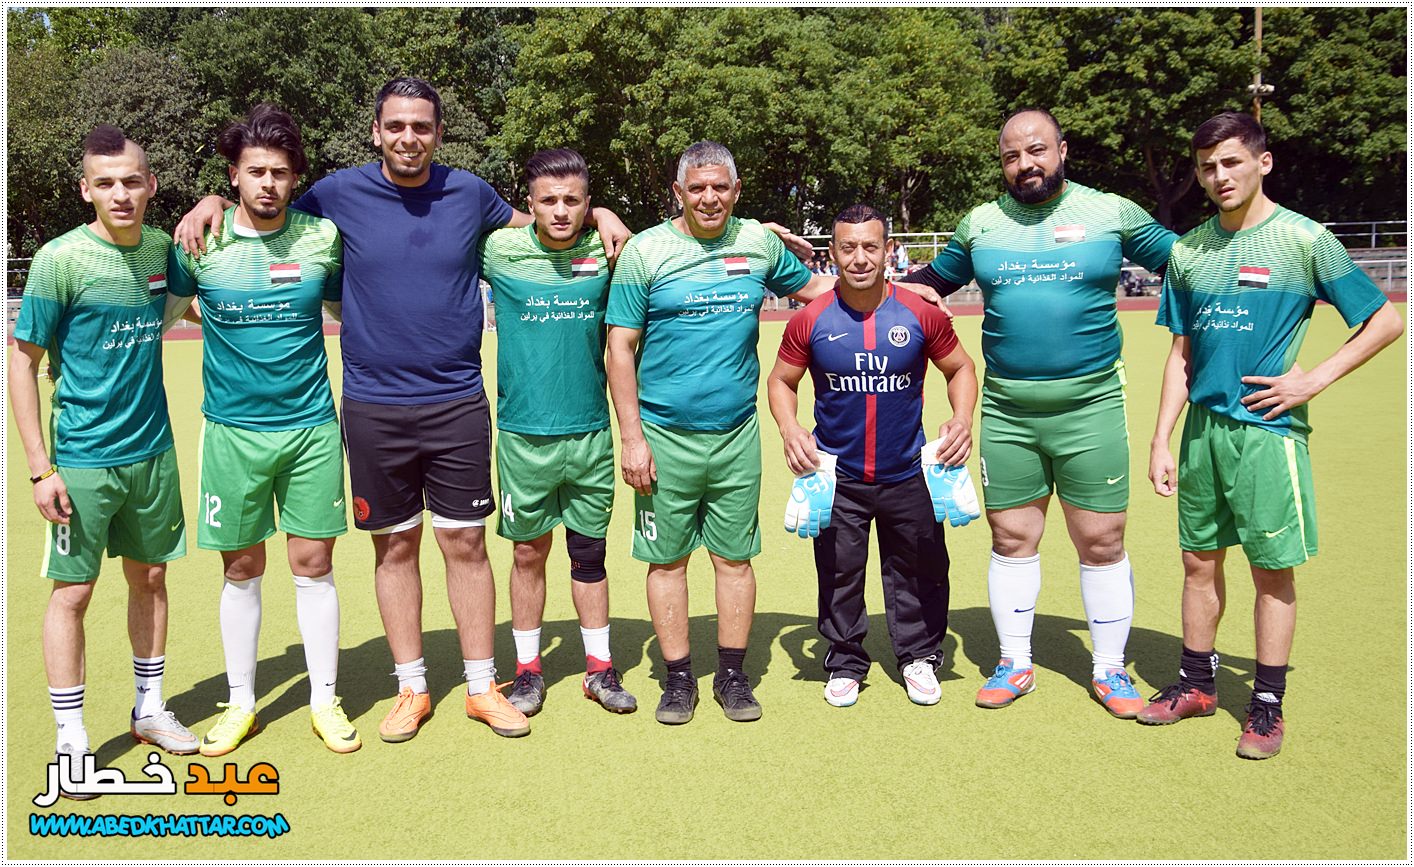 فريق الجالية الليبية يفوز بكأس الدوره الرابعة عشر بكرة القدم فريق العودة الرياضي